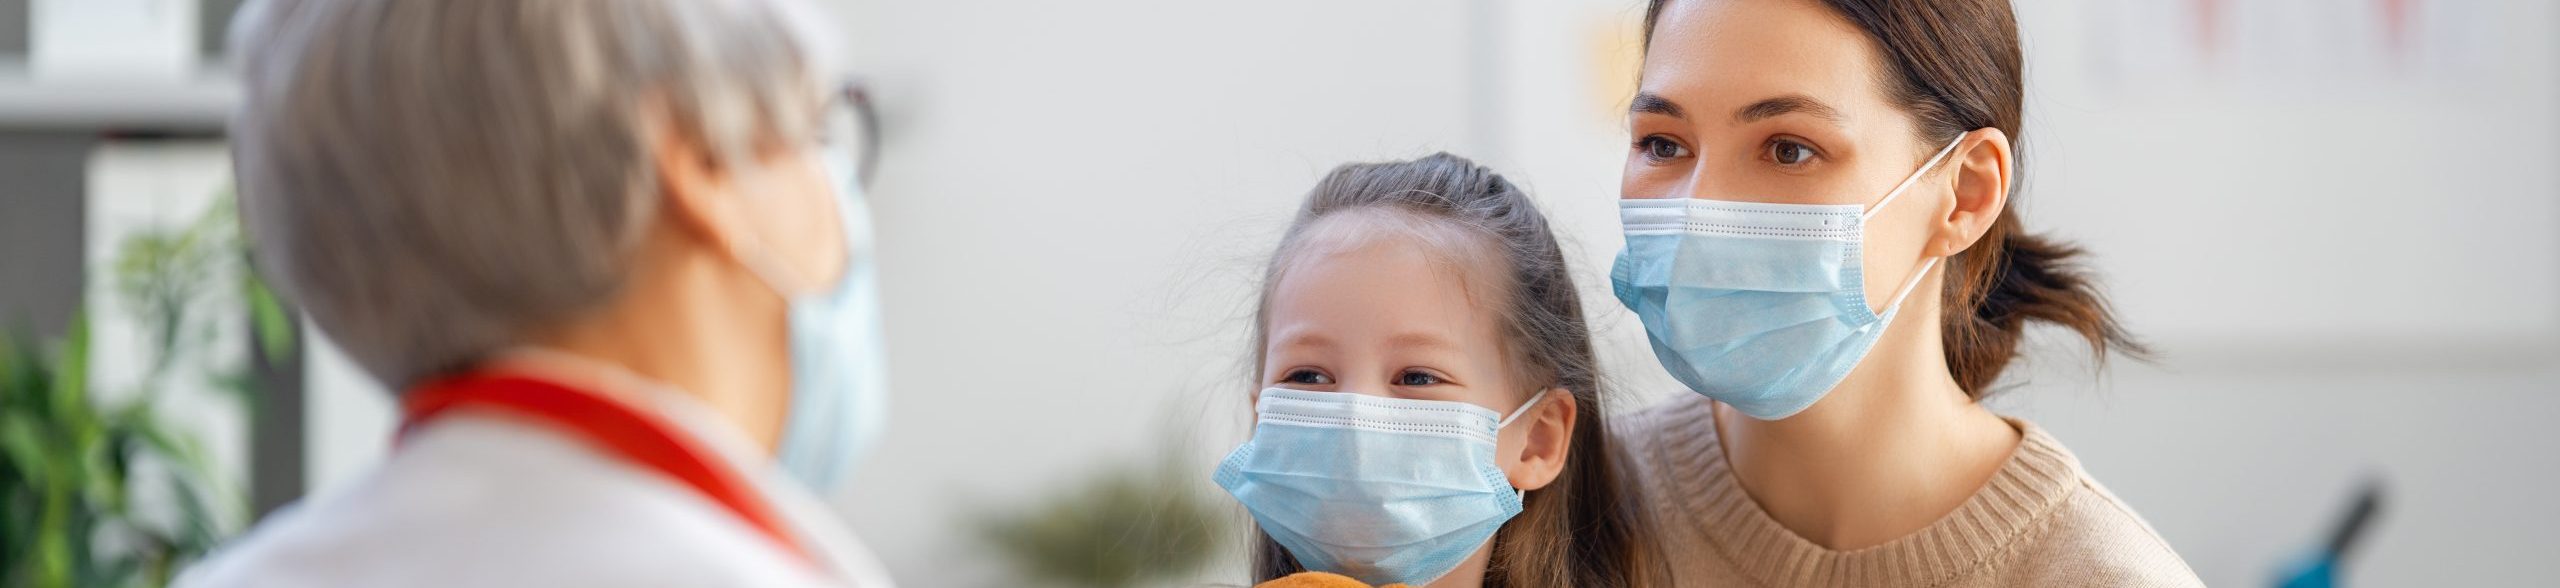 Enfermedades respiratorias de invierno: ¿Cómo protegerse?